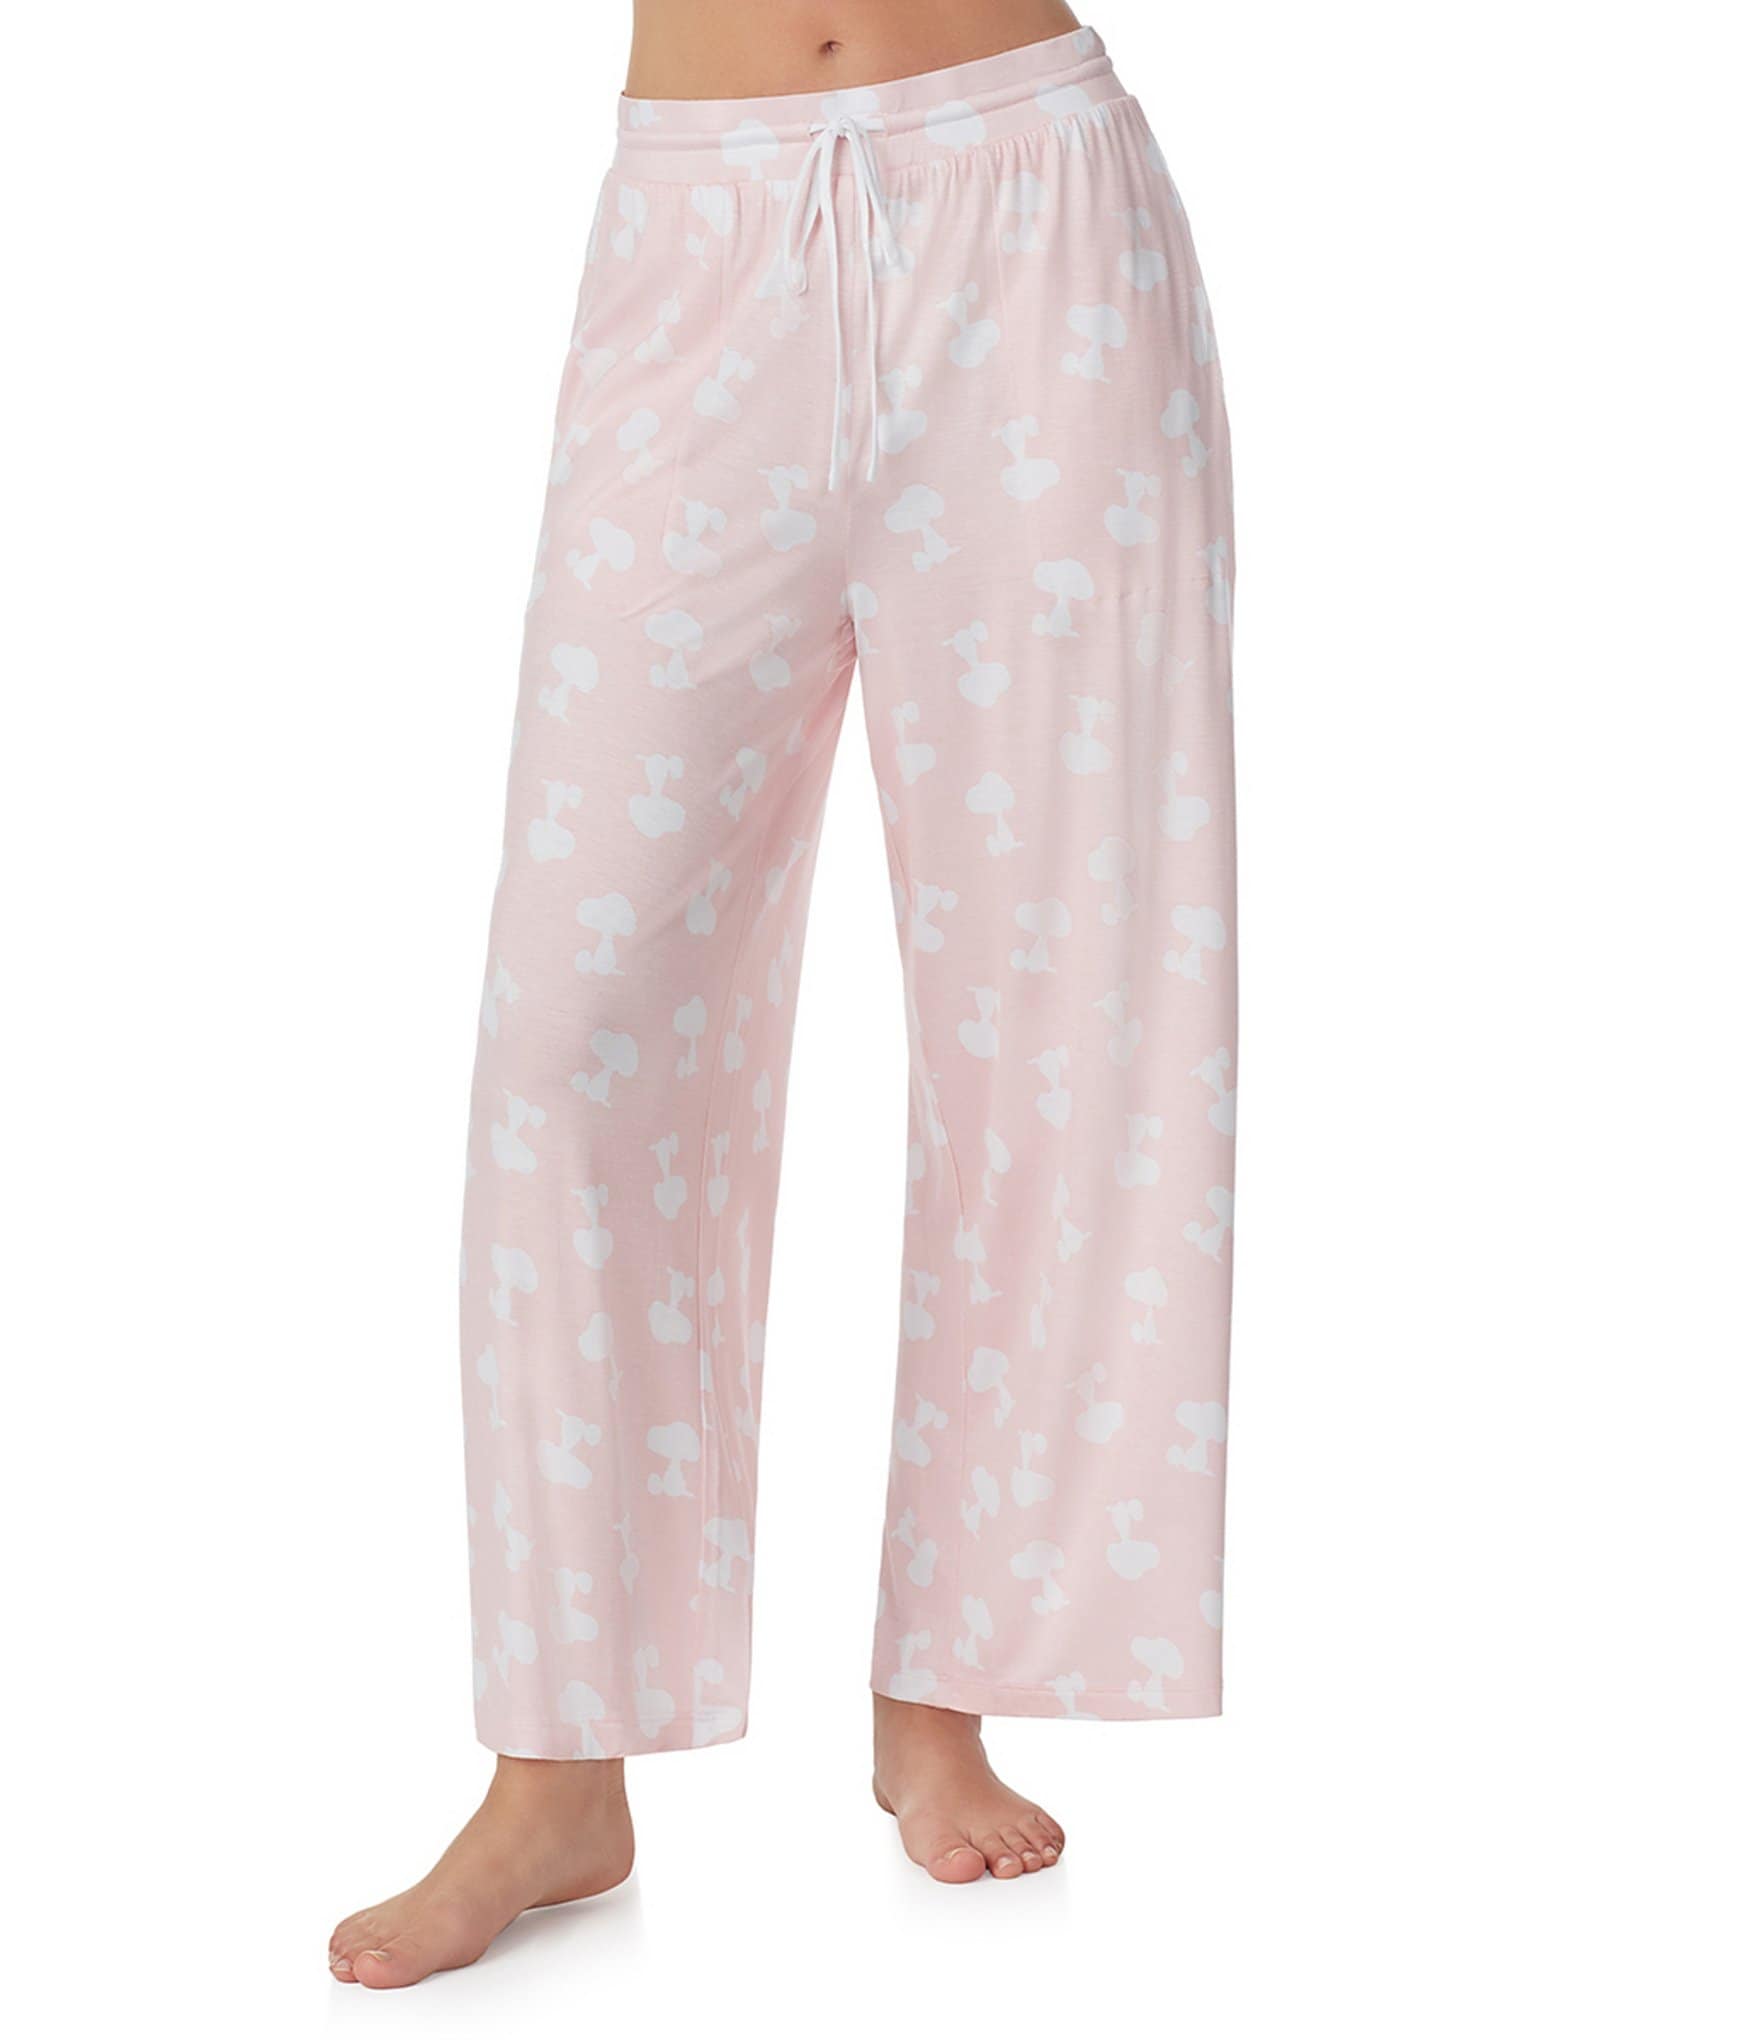 Peanuts Pajamas & Sleepwear